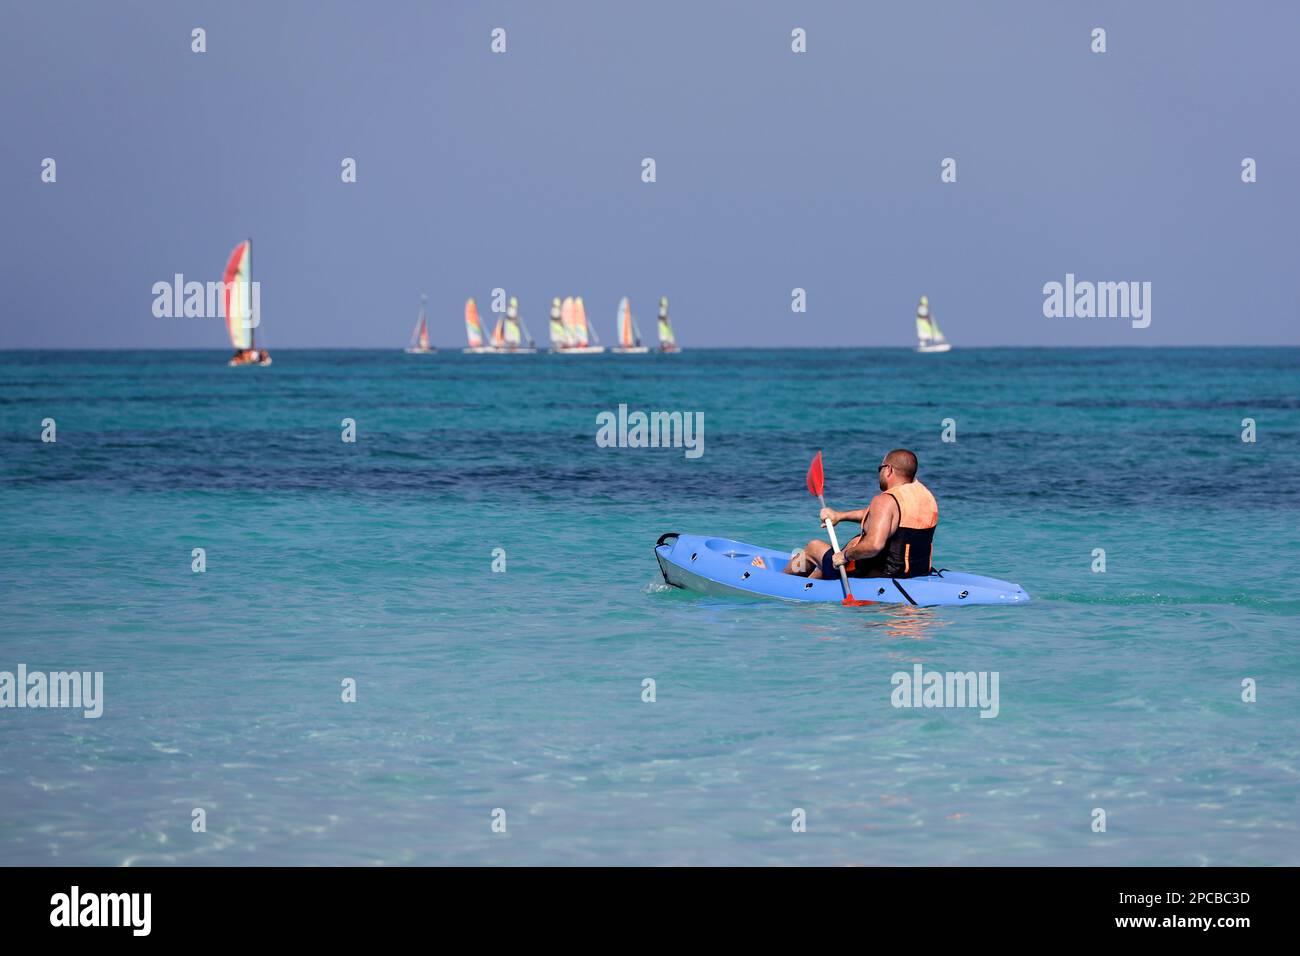 Kajakfahren auf dem Meer, Mann mit Schwimmweste rudert mit einem Ruder im Kanu auf Segelbooten im Hintergrund. Reise- und Wassersportkonzept Stockfoto